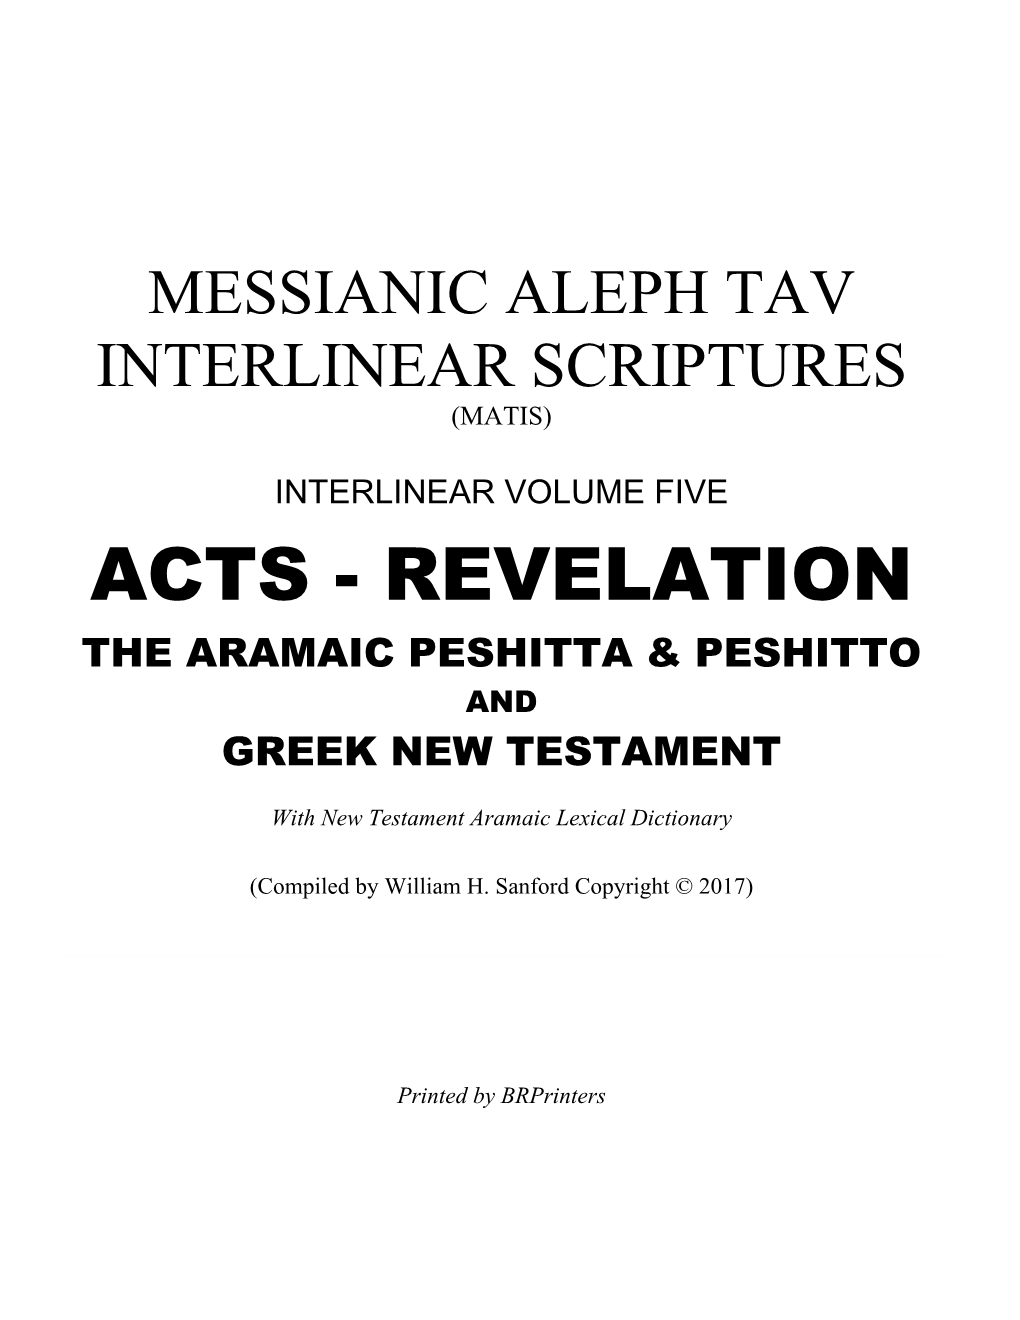 Acts - Revelation the Aramaic Peshitta & Peshitto and Greek New Testament